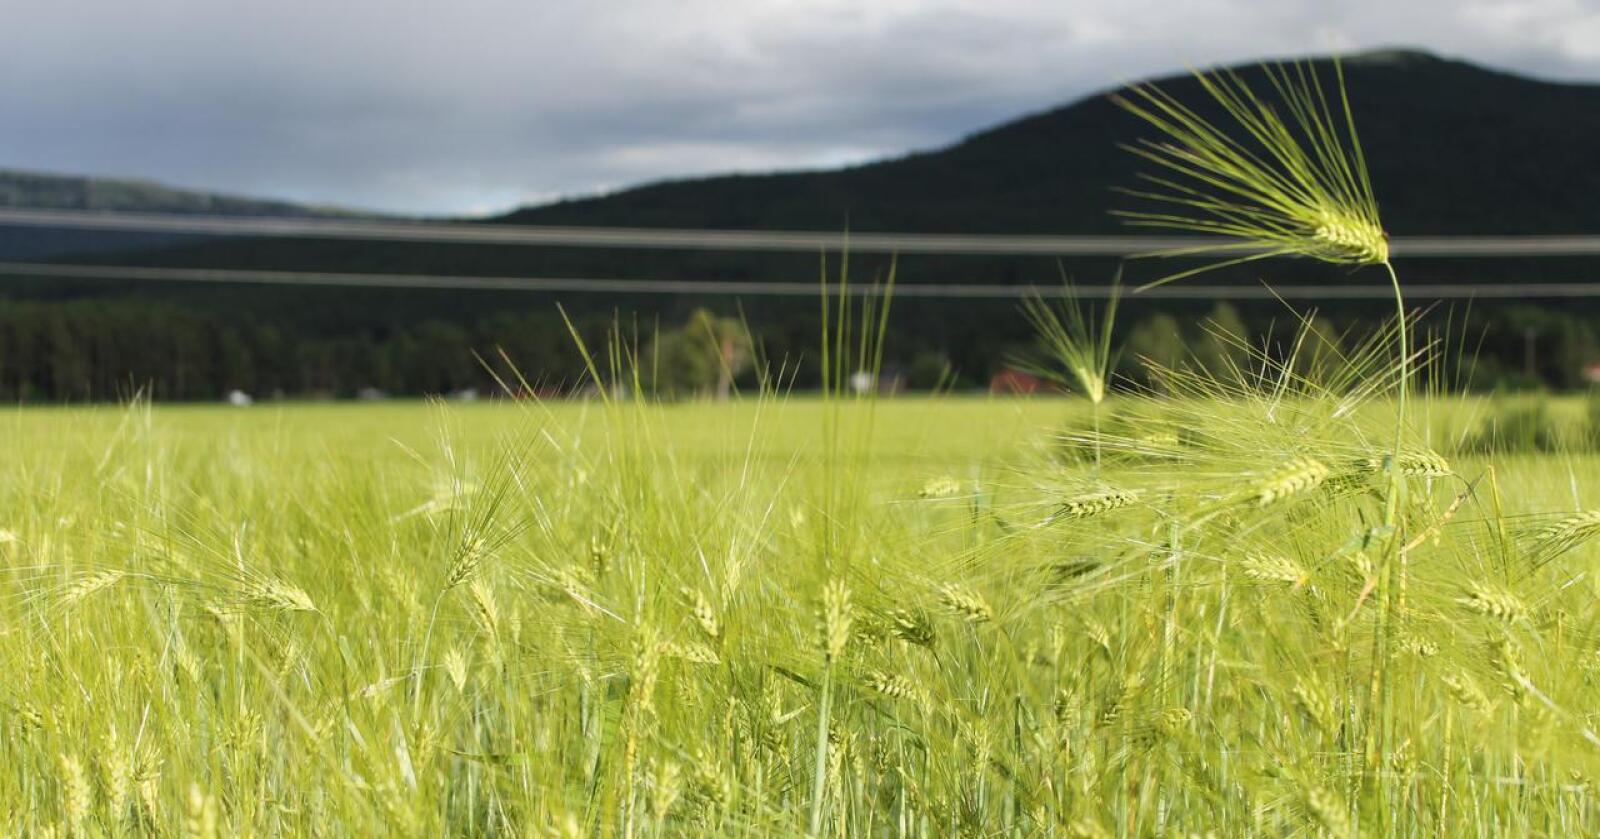 ØKES: Det trengs mer økologisk korn dersom vi skal kunne produsere norsk, økologisk kraftfôr, påpeker NLR Innlandet. Foto: Marit Glærum